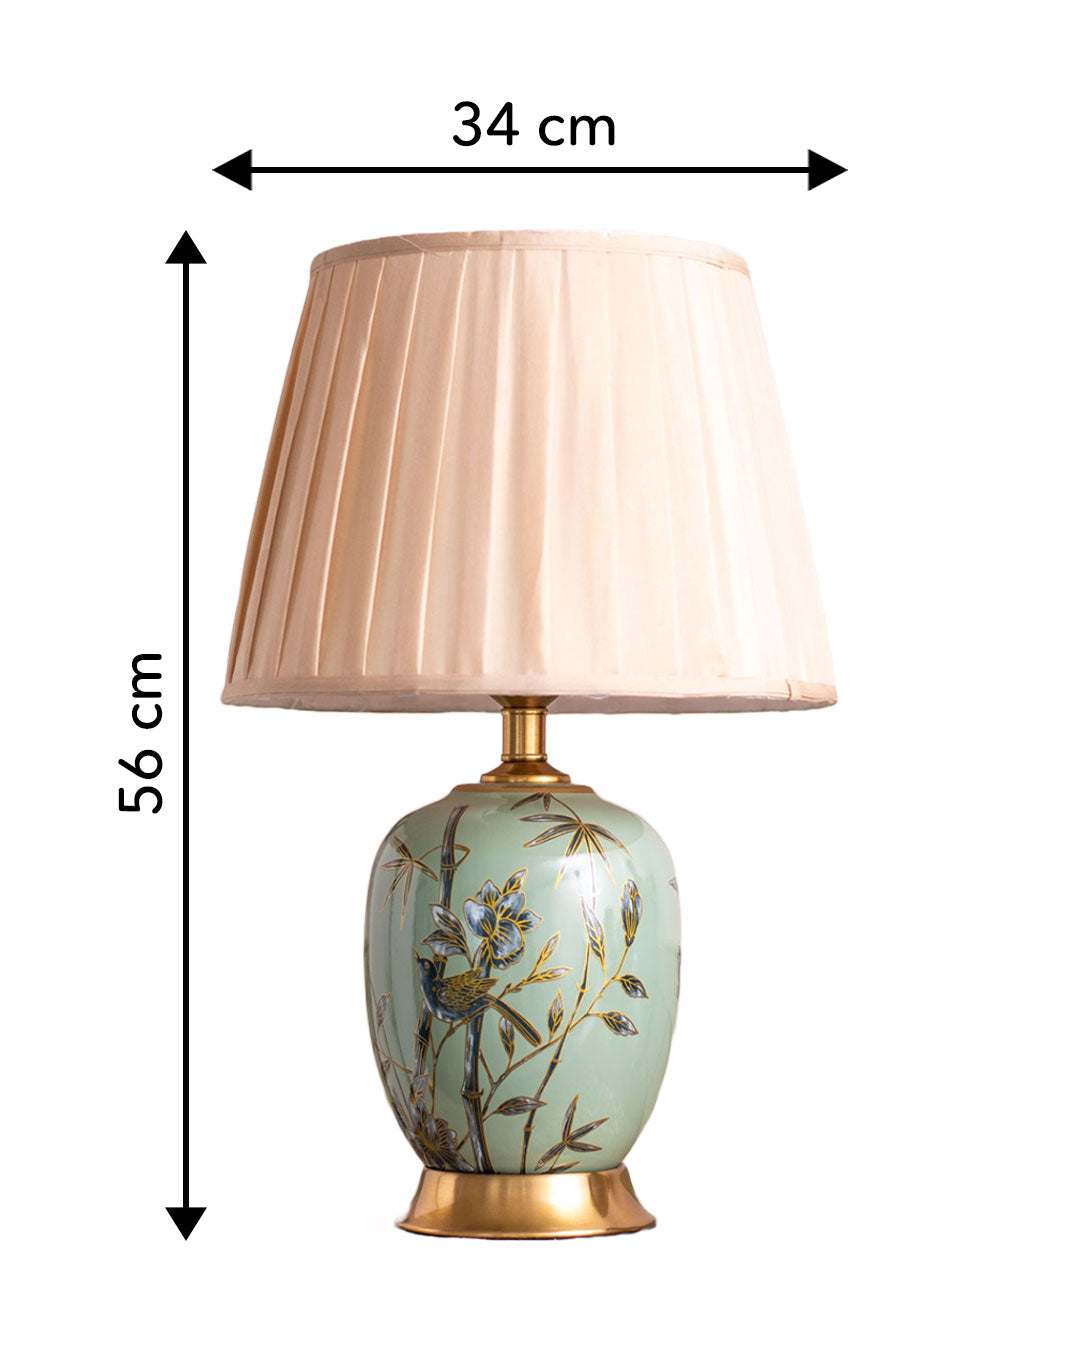 'Prestige' Ceramic Table Lamp - Green